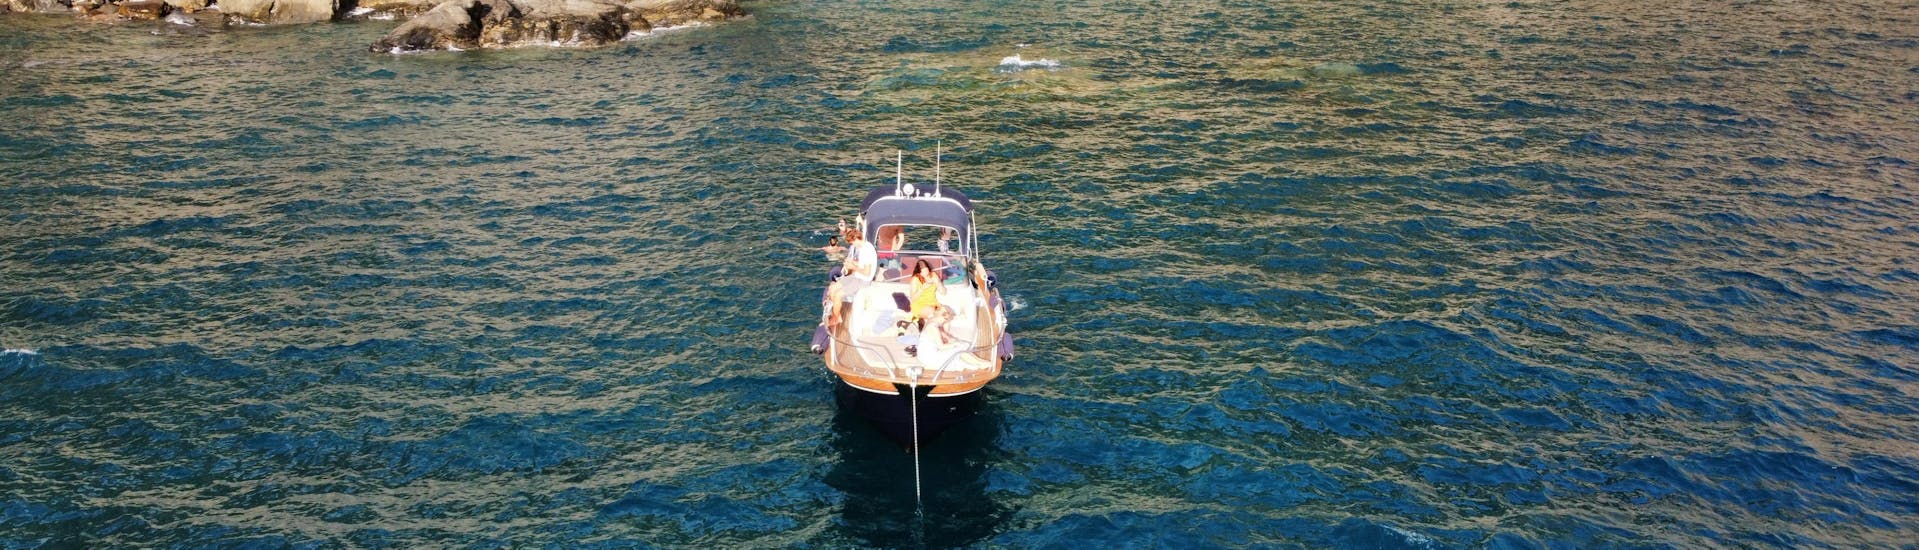 Private Bootstour von Levanto nach Cinque Terre & Porto Venere mit Mittagessen.